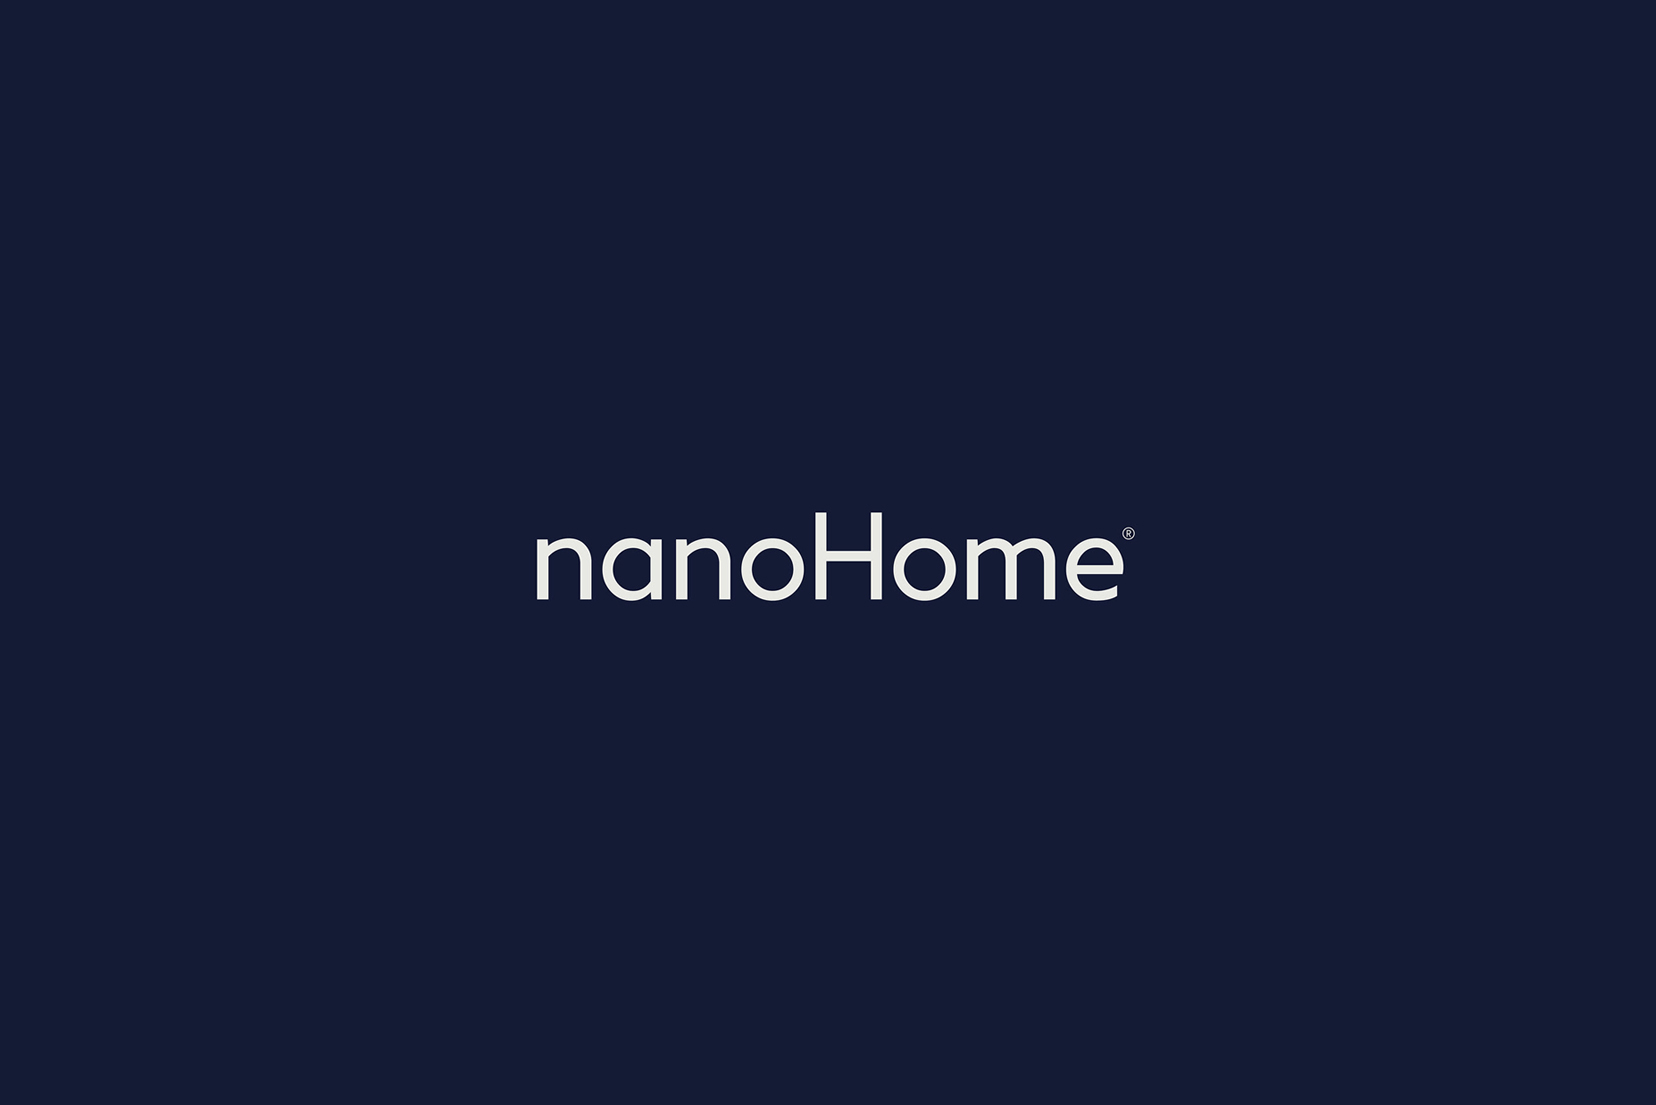 nanoHome brand concept